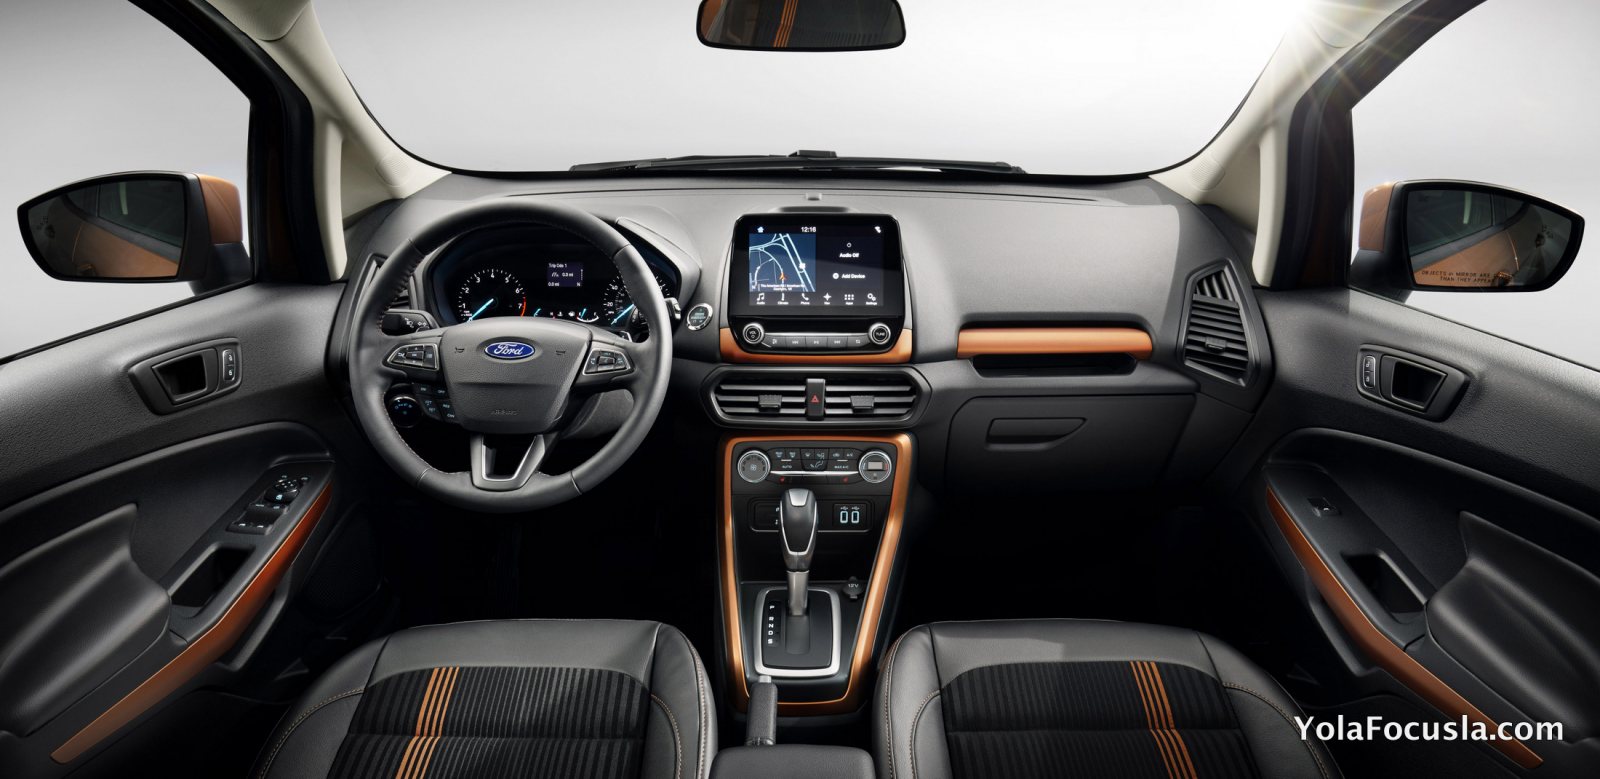 Новый Форд ЭкоСпорт 2015-2016 цена, фото, хар-ки Ford ...